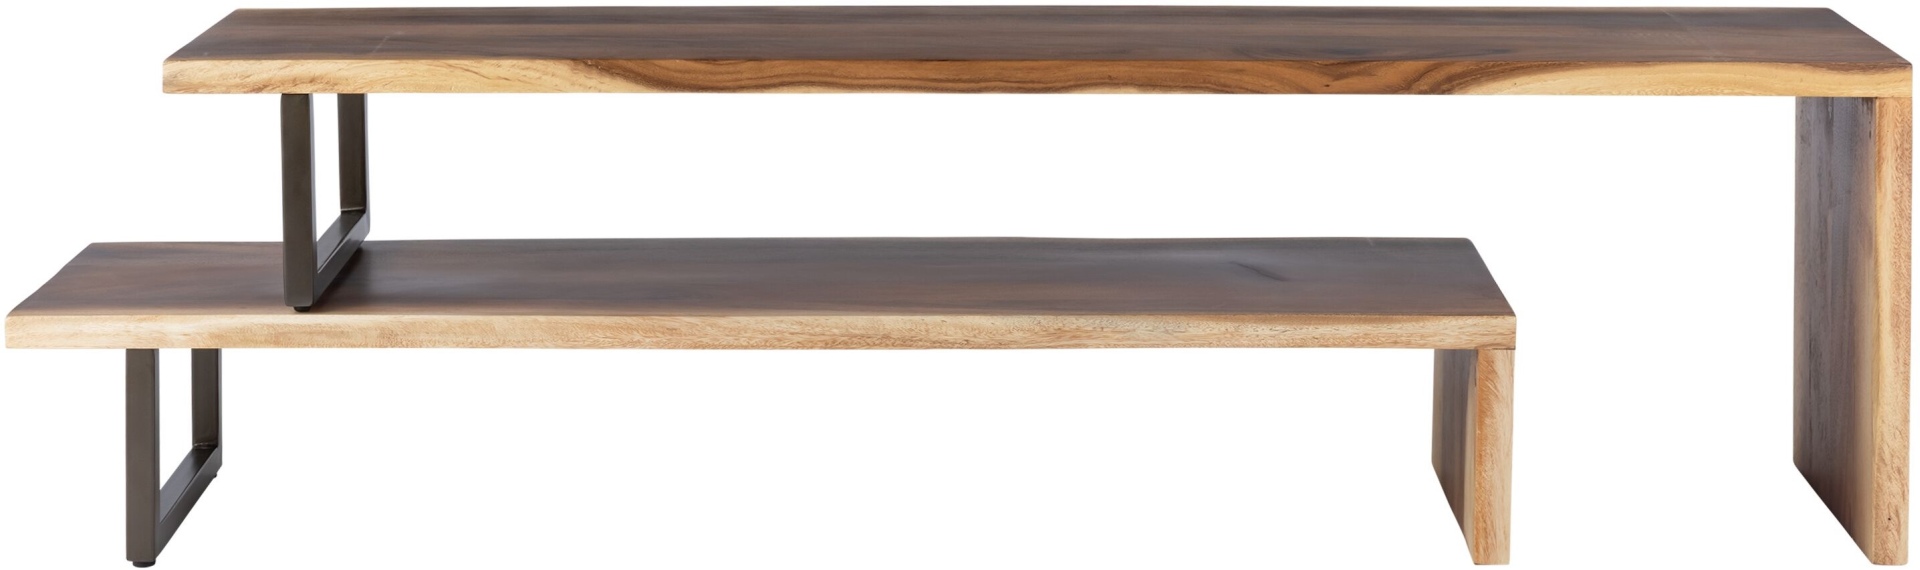 Das TV-Board Flare wurde aus Suar Holz gefertigt, welche einen natürlichen Farbton besitzen. Das Gestell ist aus Metall und ist schwarz. Das Board verfügt über zwei offene Fächer. Es überzeugt mit seinem massivem aber auch modernem Design. Das Board ist a